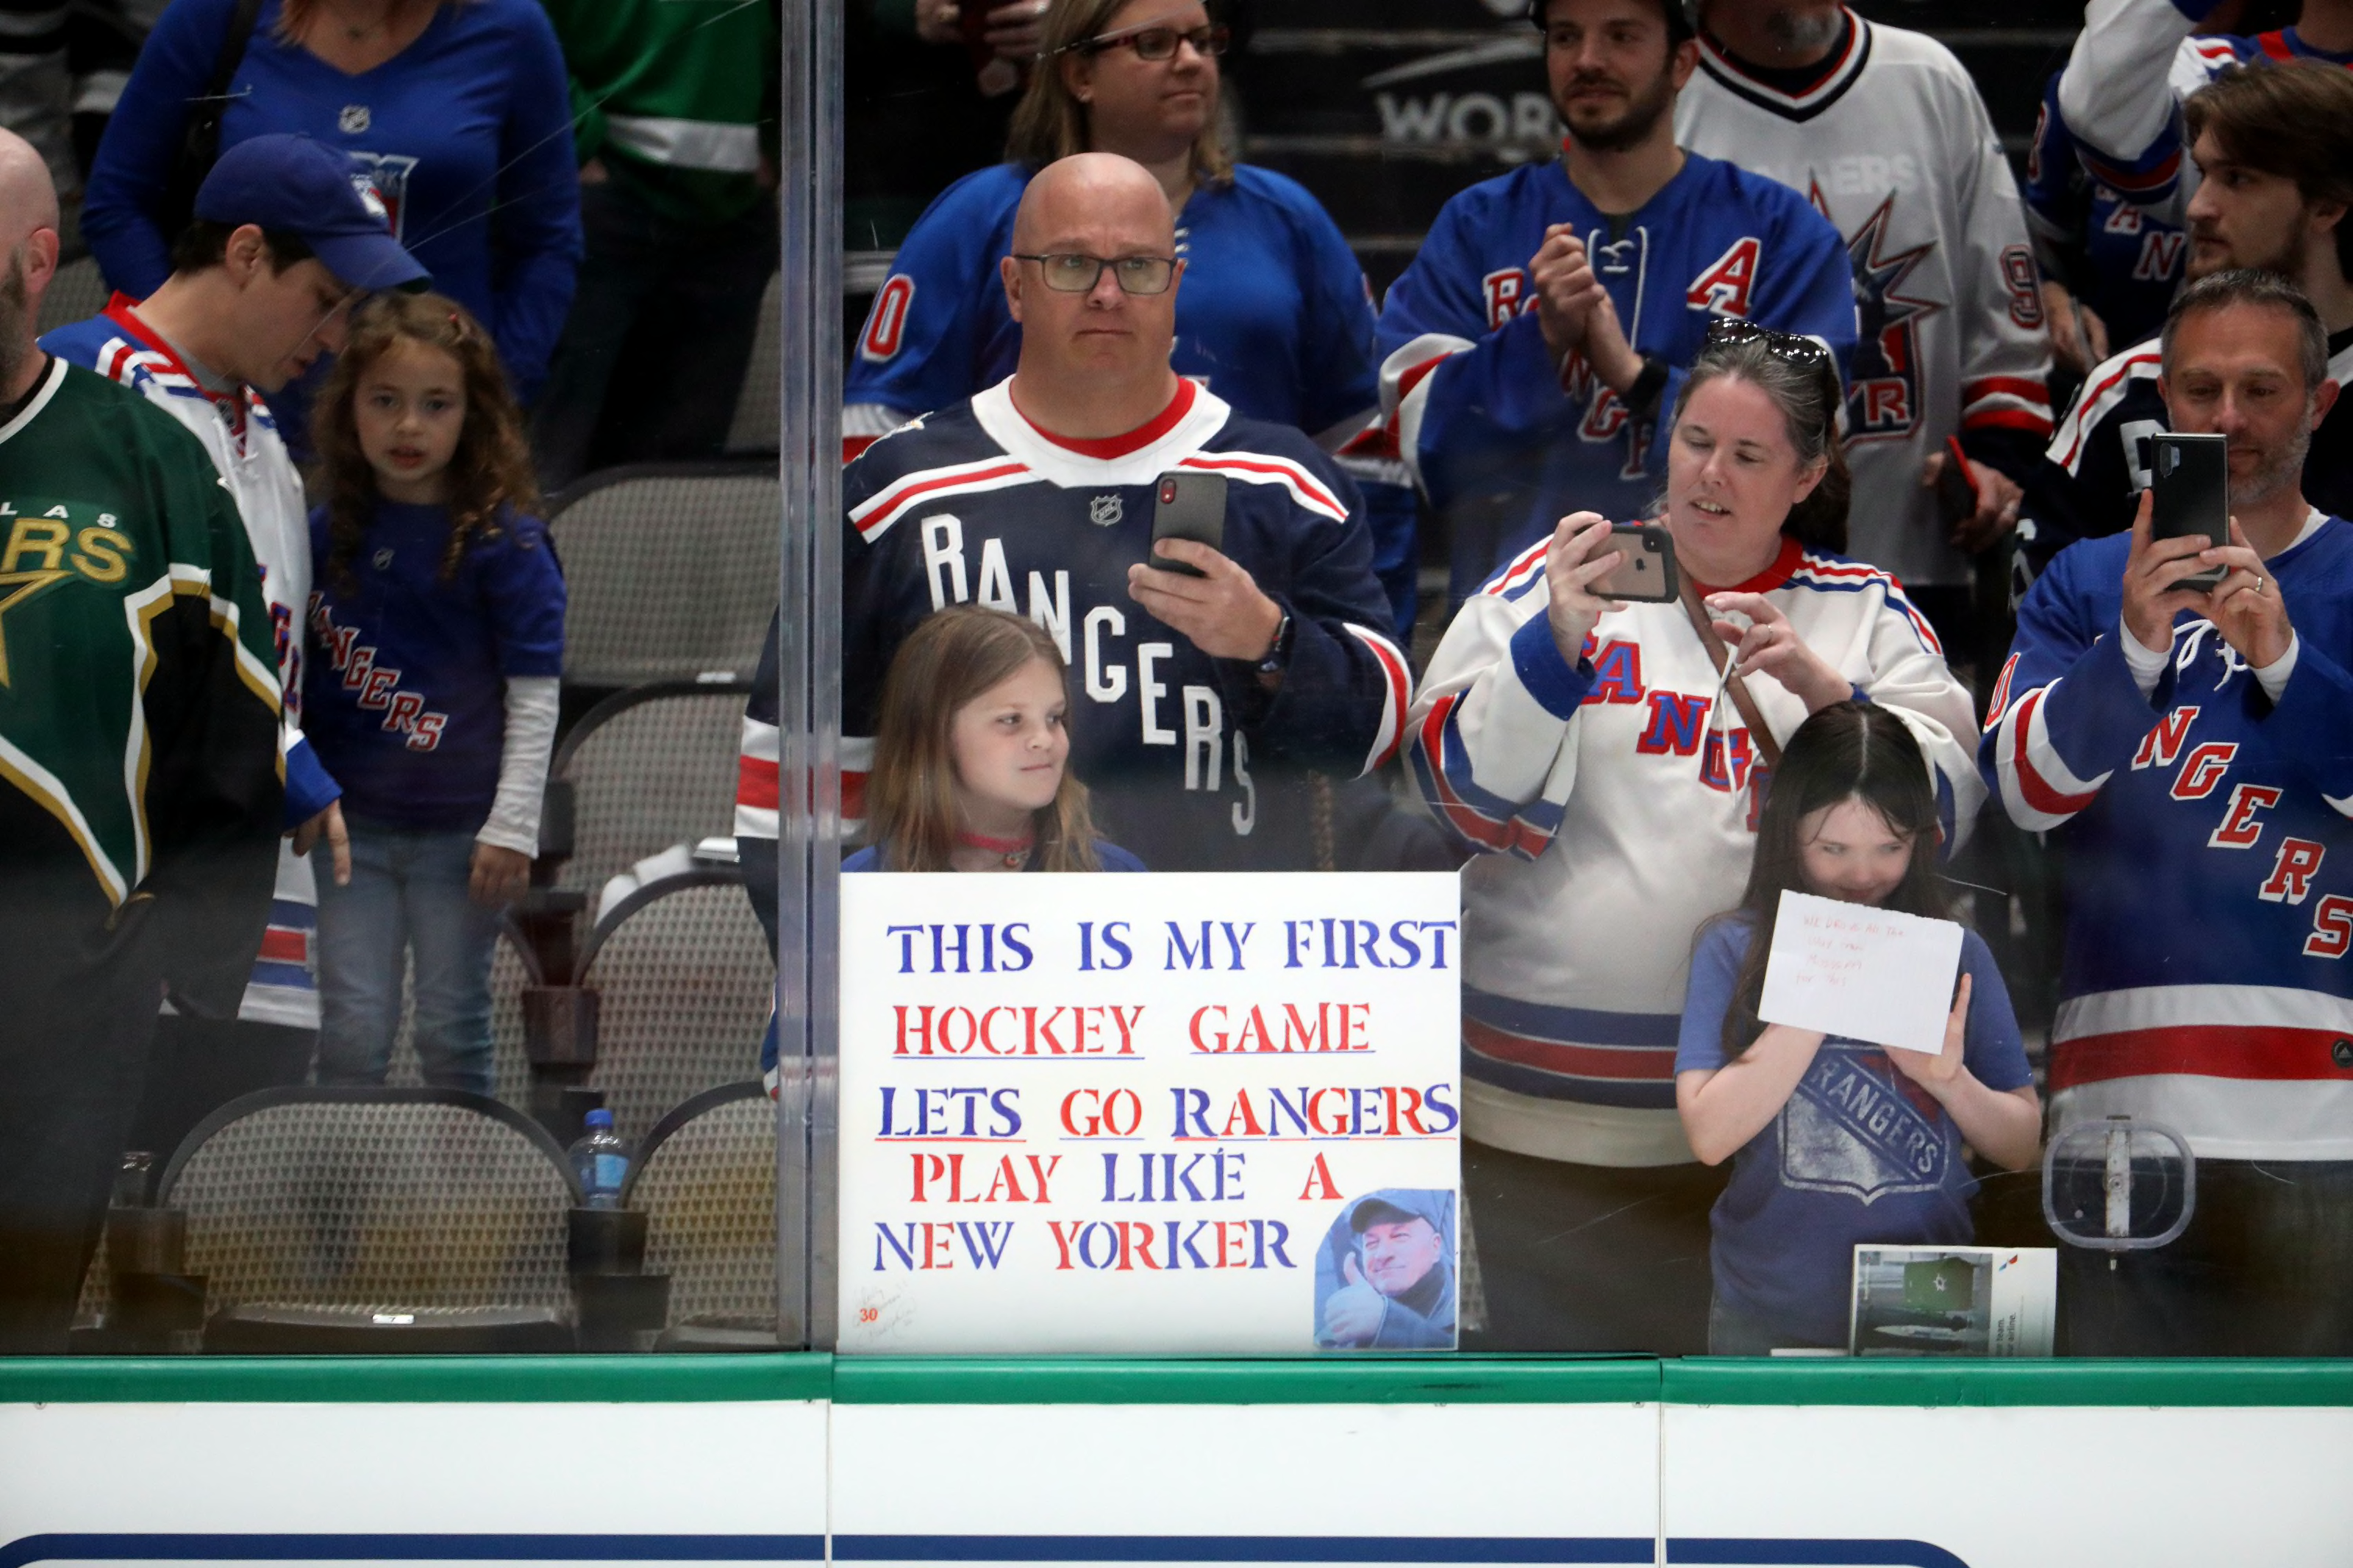 New York Rangers NHL Fan Posters